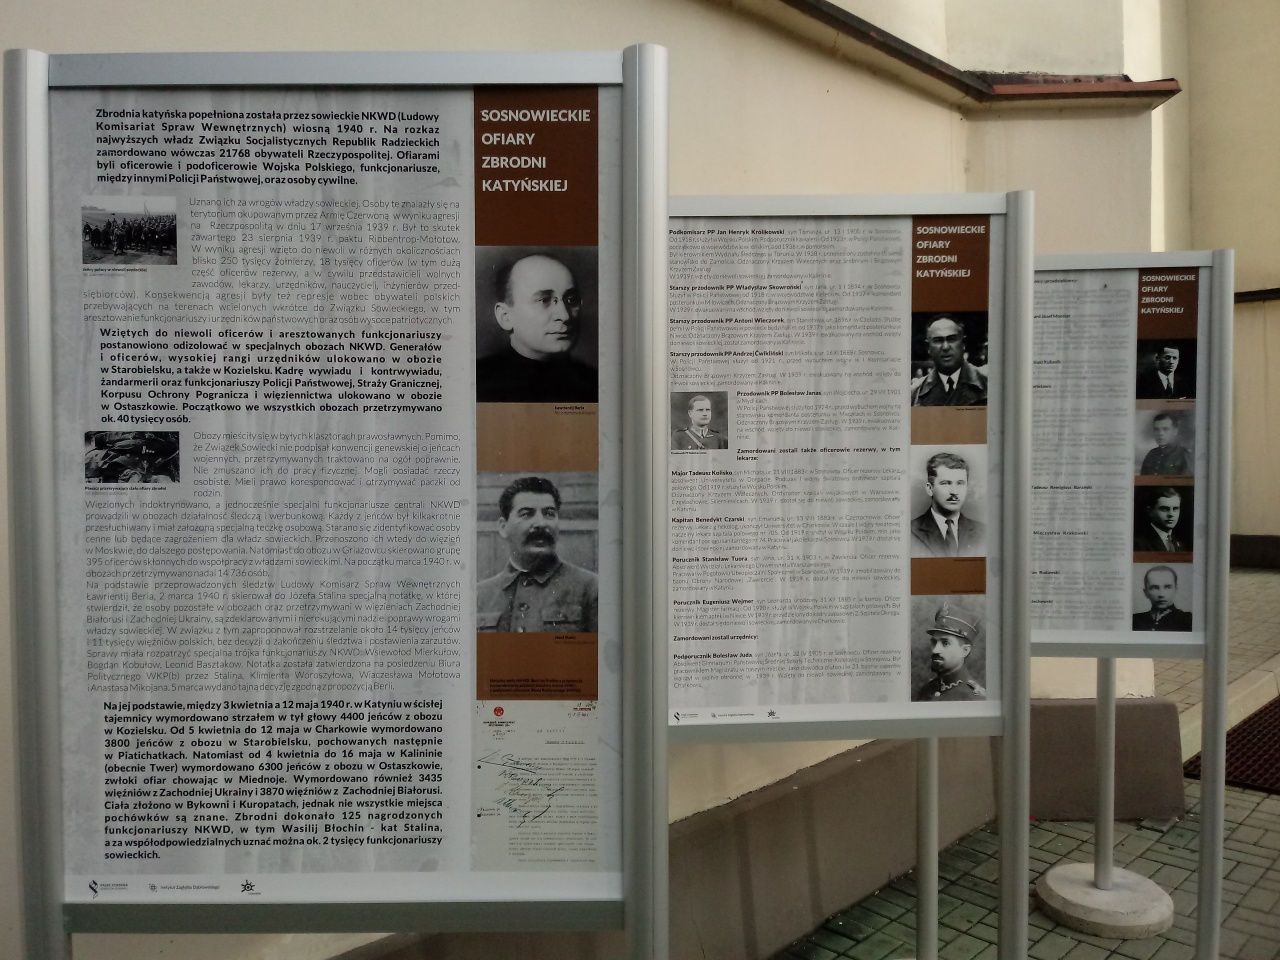 Sosnowieckie ofiary zbrodni katyńskiej